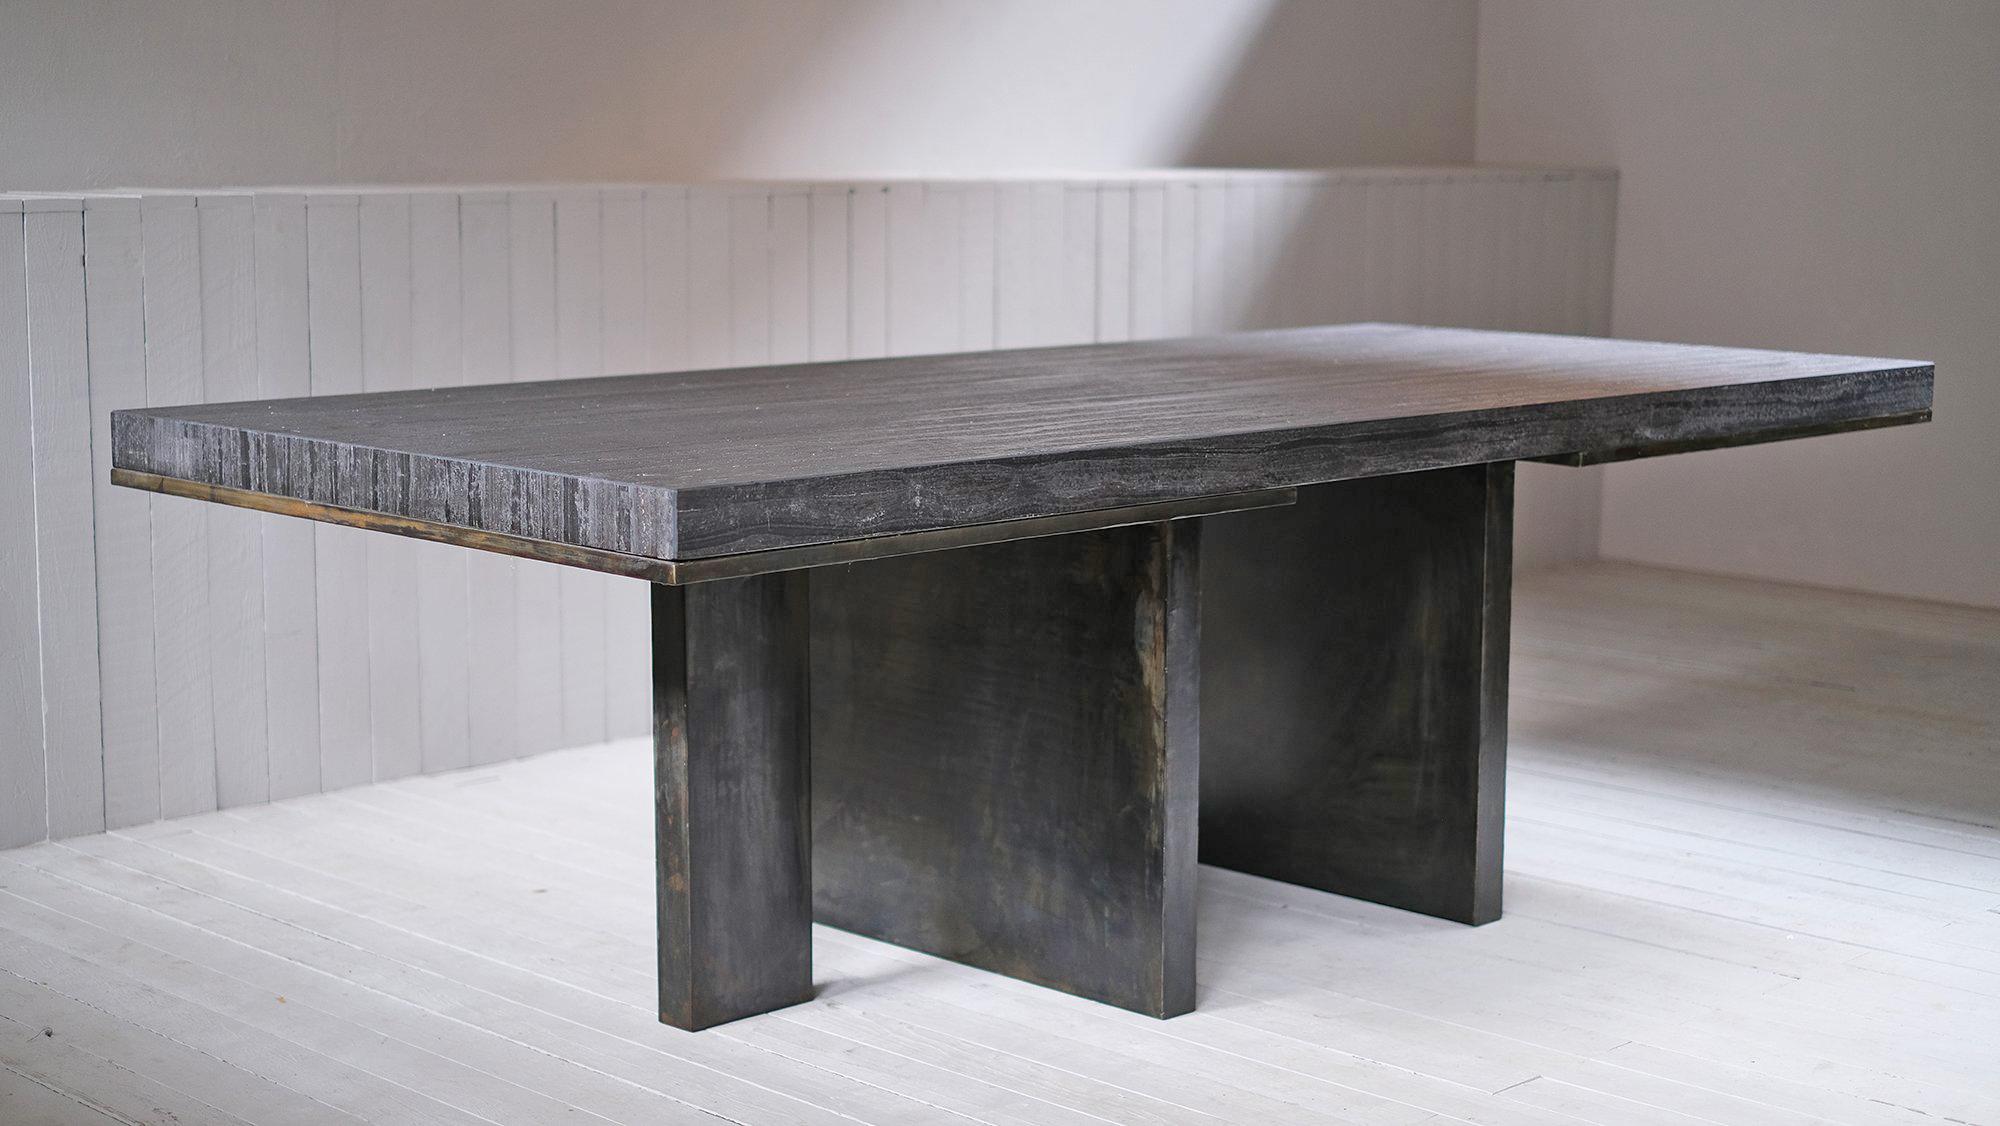 Zeitgenössischer Esstisch aus Marmor und Stahl von Arno Declercq
Limitierte Auflage von 8 Stück

Abmessungen: 
250 x 110h 75 cm
Maße: 98